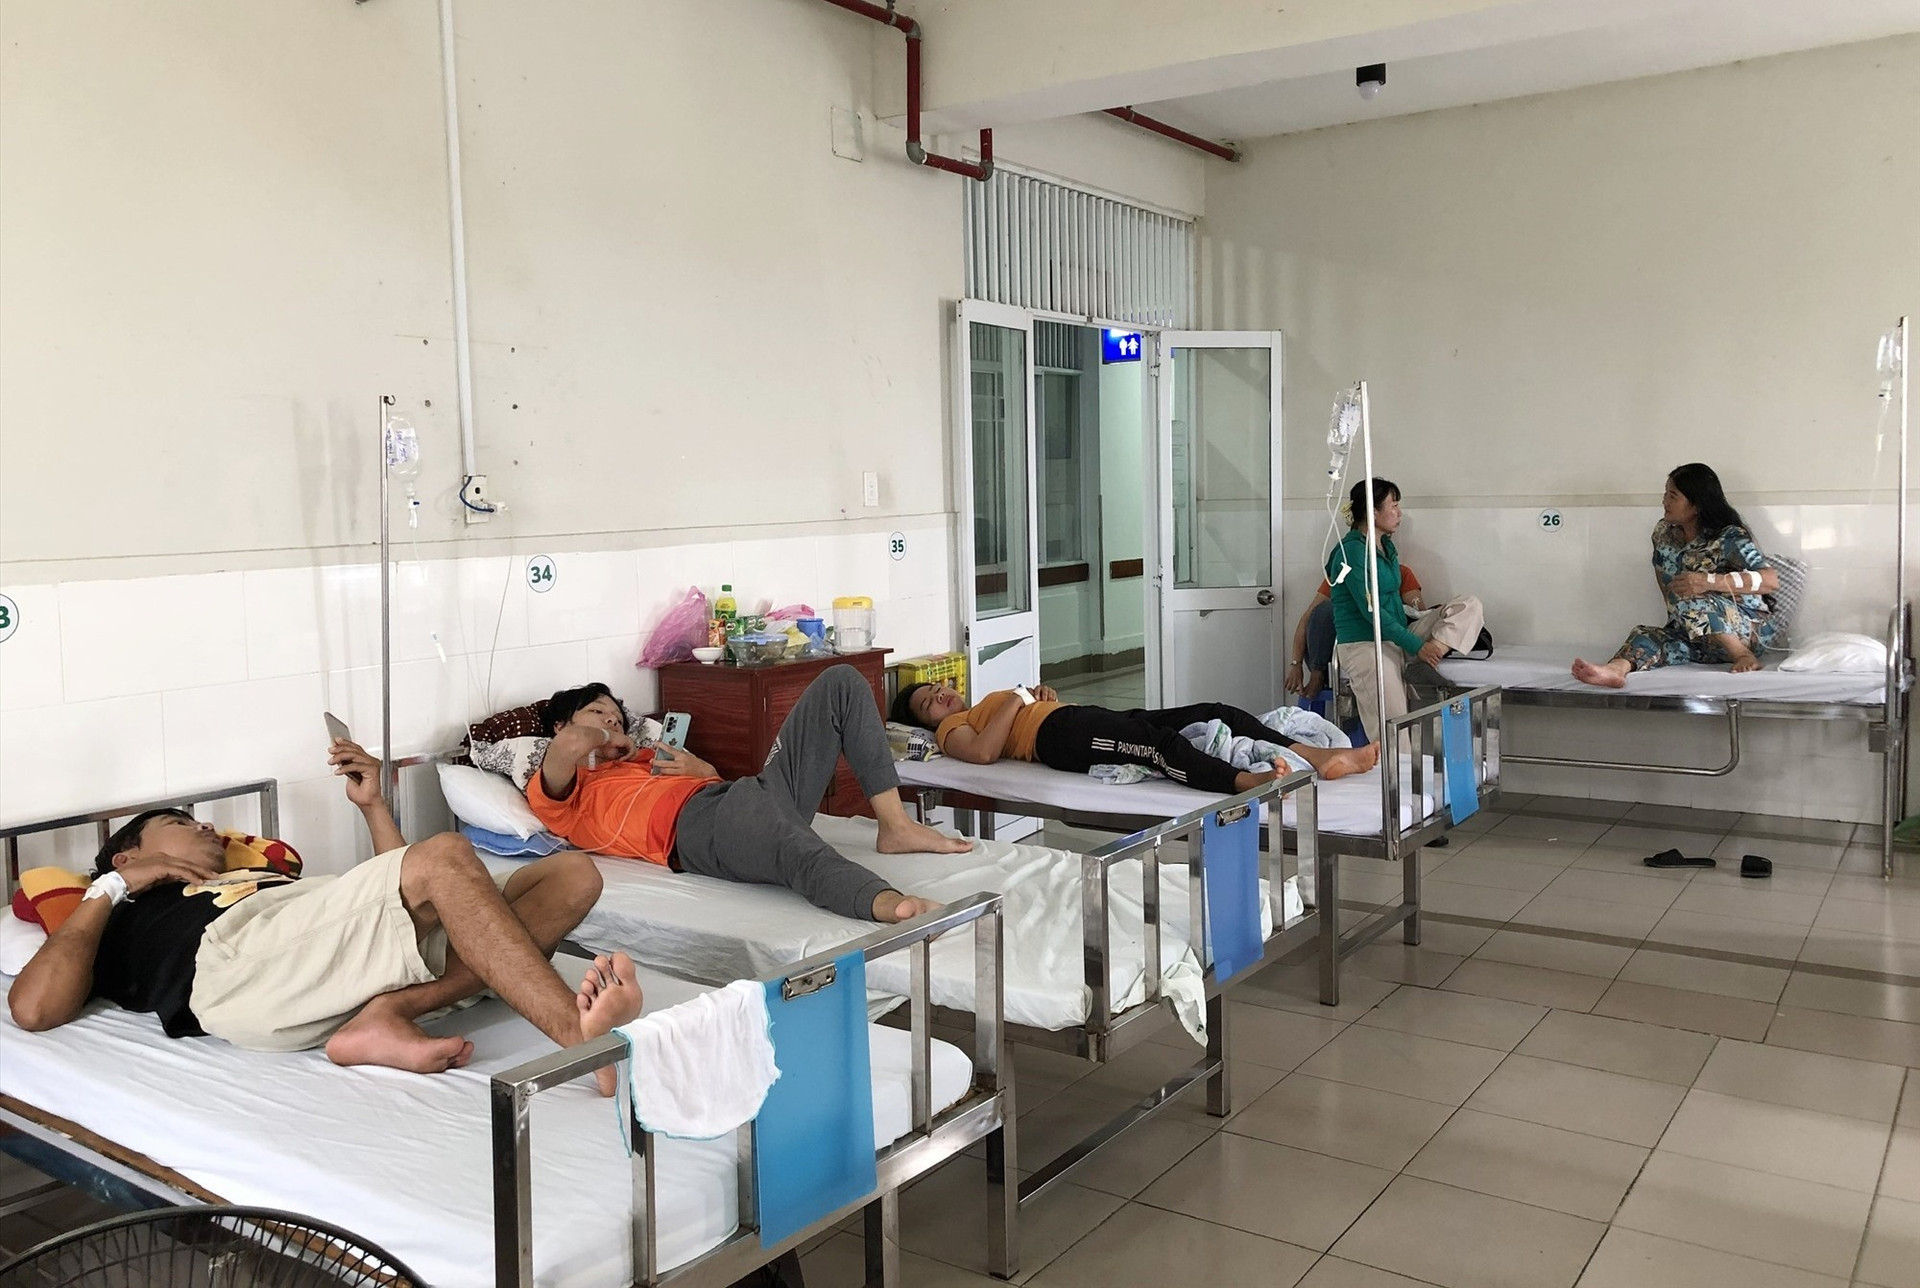 ệnh nhân điều trị SXH tại Bệnh viện Đa khoa Sài Gòn - Tam Kỳ. Ảnh: X.H